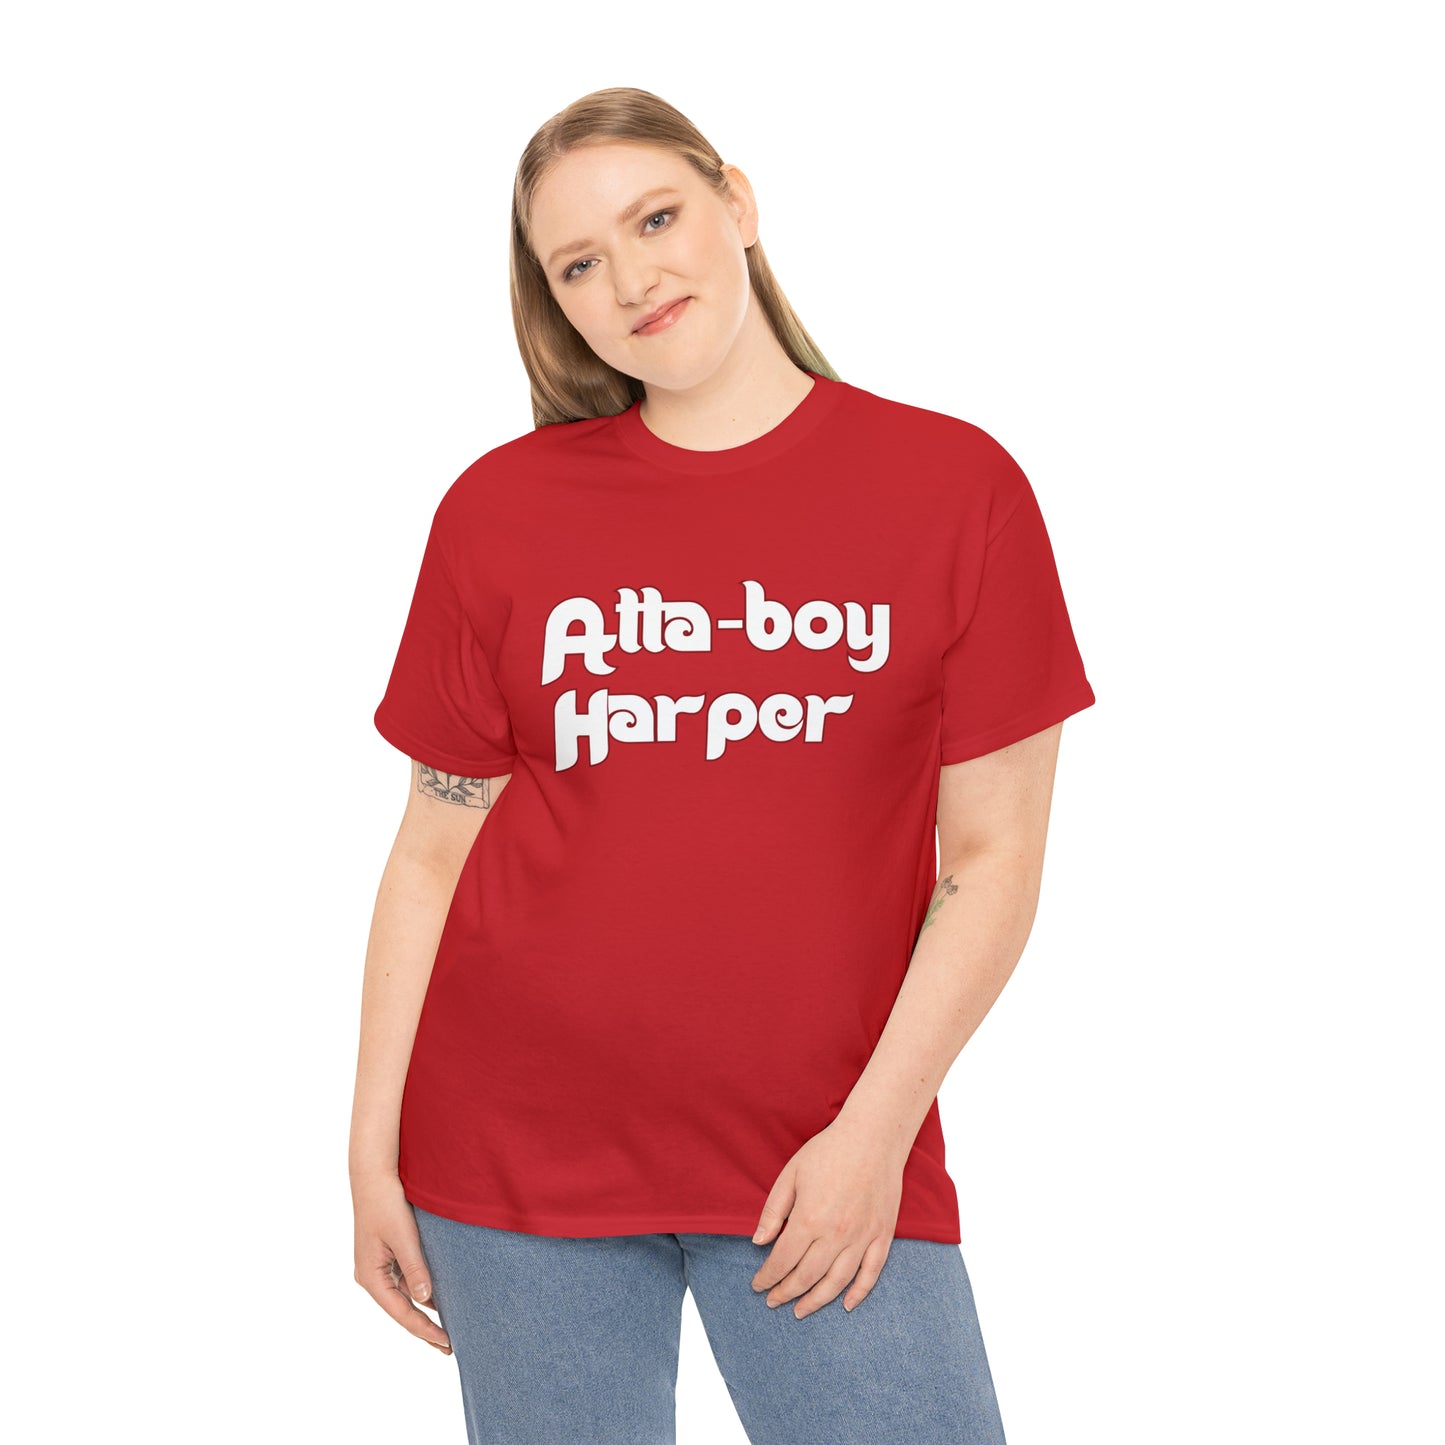 Atta-Boy Harper Phillies Tee